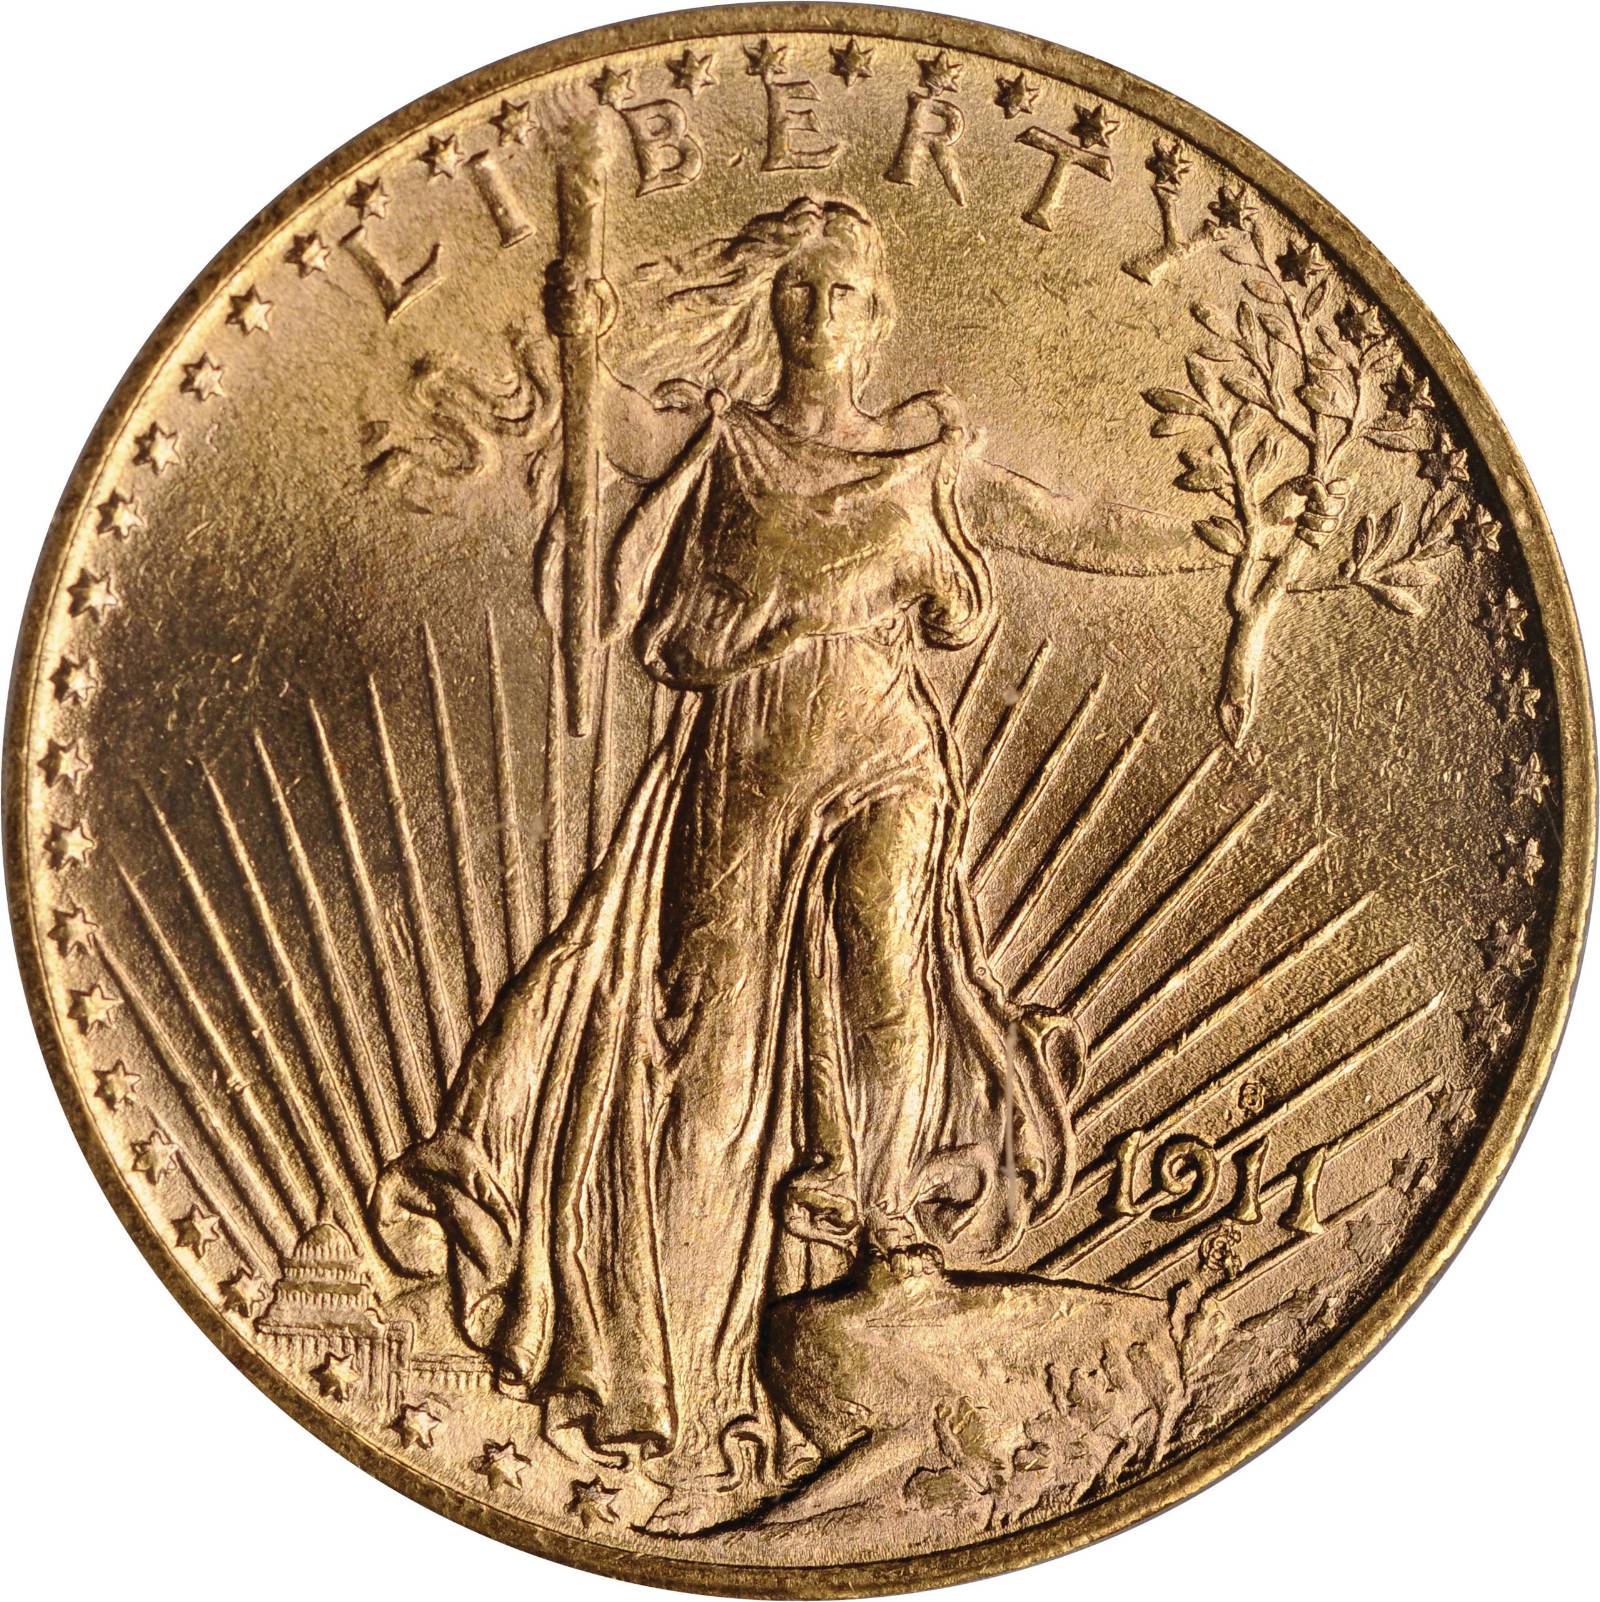 1933 Saint Gaudens Double Eagle Gold Coin. Saint Gaudens Double Eagle. Монета глянцевая. Сент-Годенса 1933.